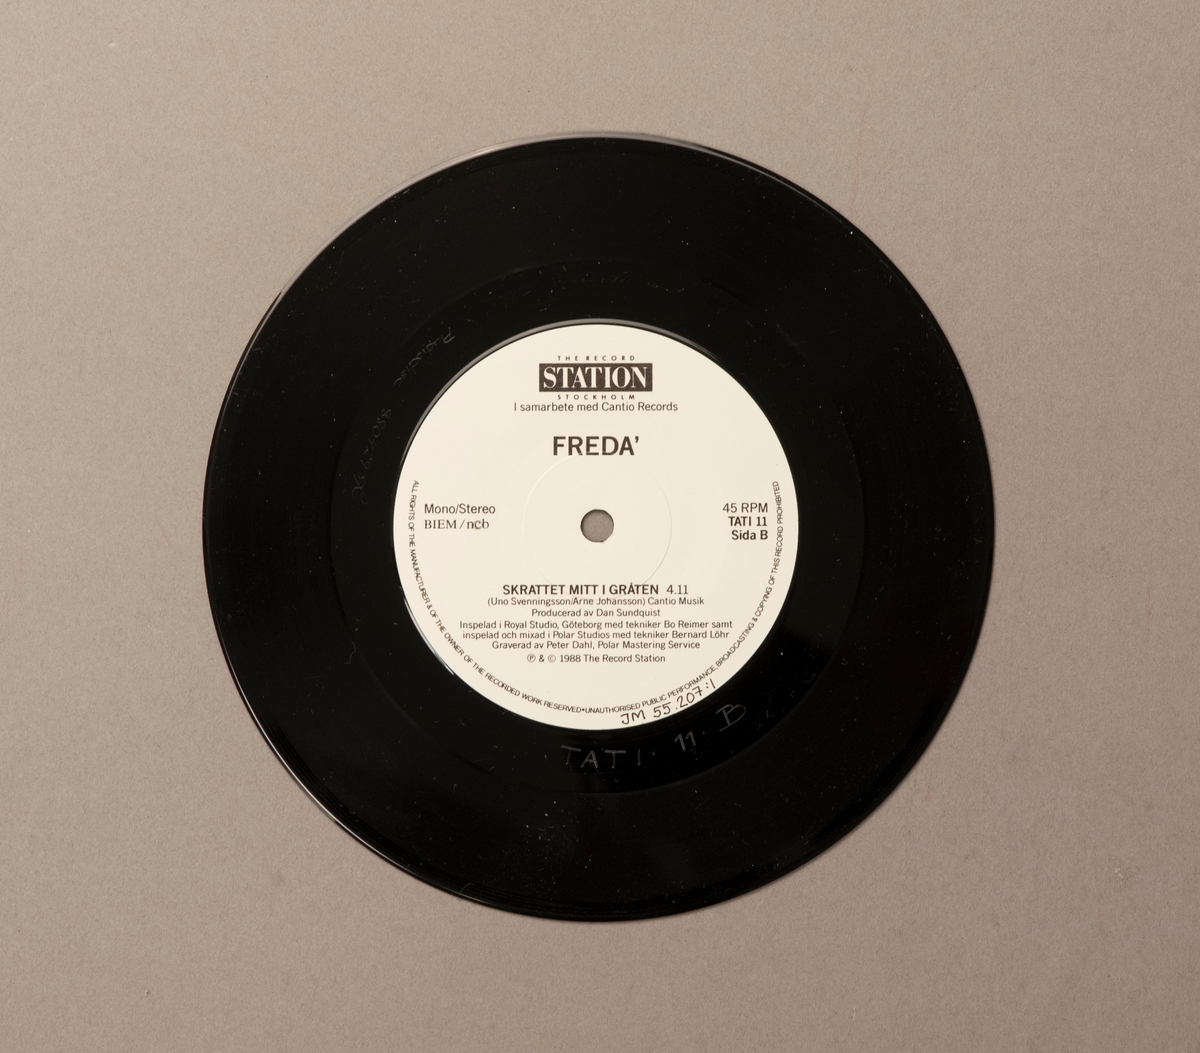 Singel-skiva av svart vinyl med vit pappersetikett, i omslag av papper. Framsidan av omslaget har ett färgfotografi av gruppen.

Innehåll
Sida A: Det måste gå
Sida B: Skrattet mitt i gråten

JM 55207:1, Skiva
JM 55207:2, Omslag